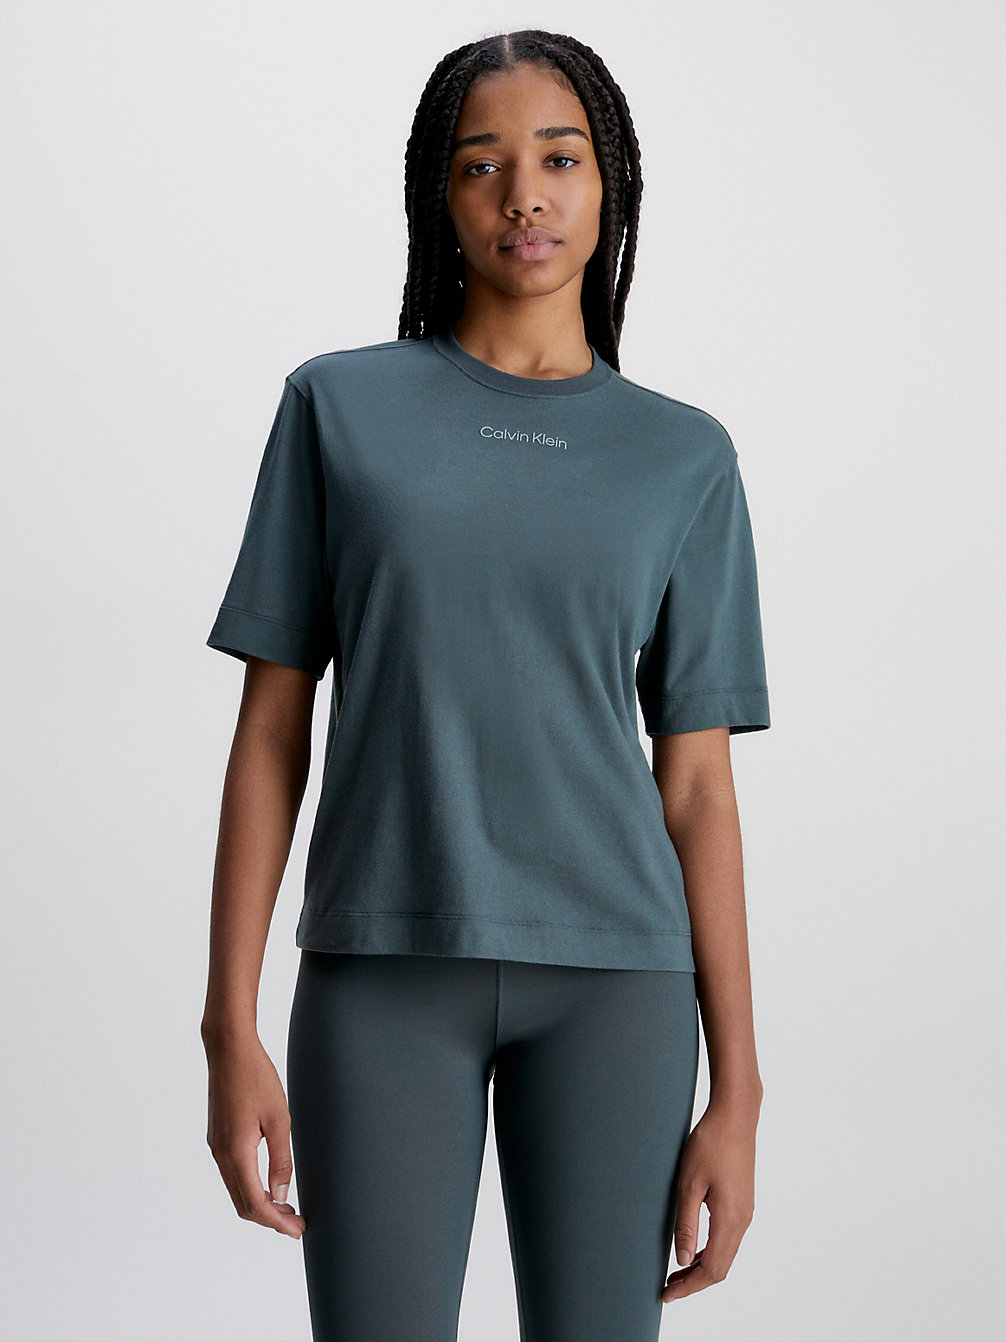 URBAN CHIC > Sport T-Shirt > undefined dames - Calvin Klein